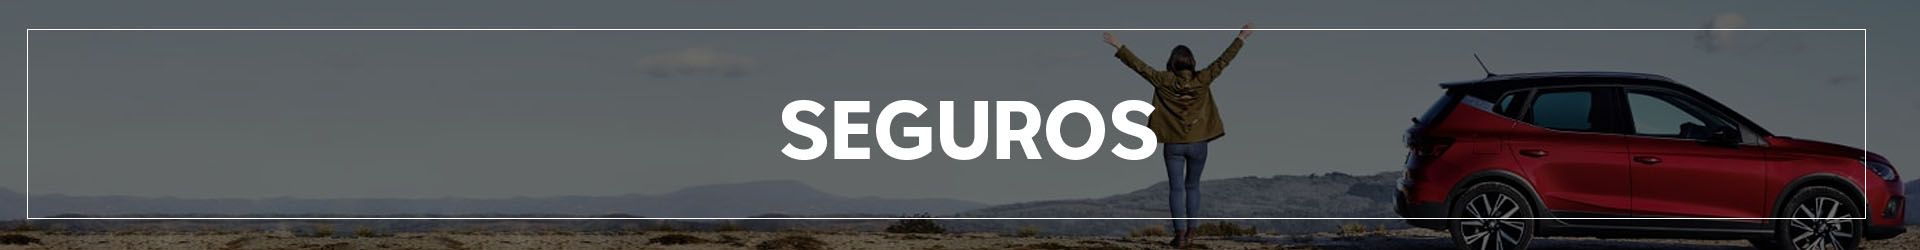 SEGUROS | Automocion Terry Concesionario Cadiz